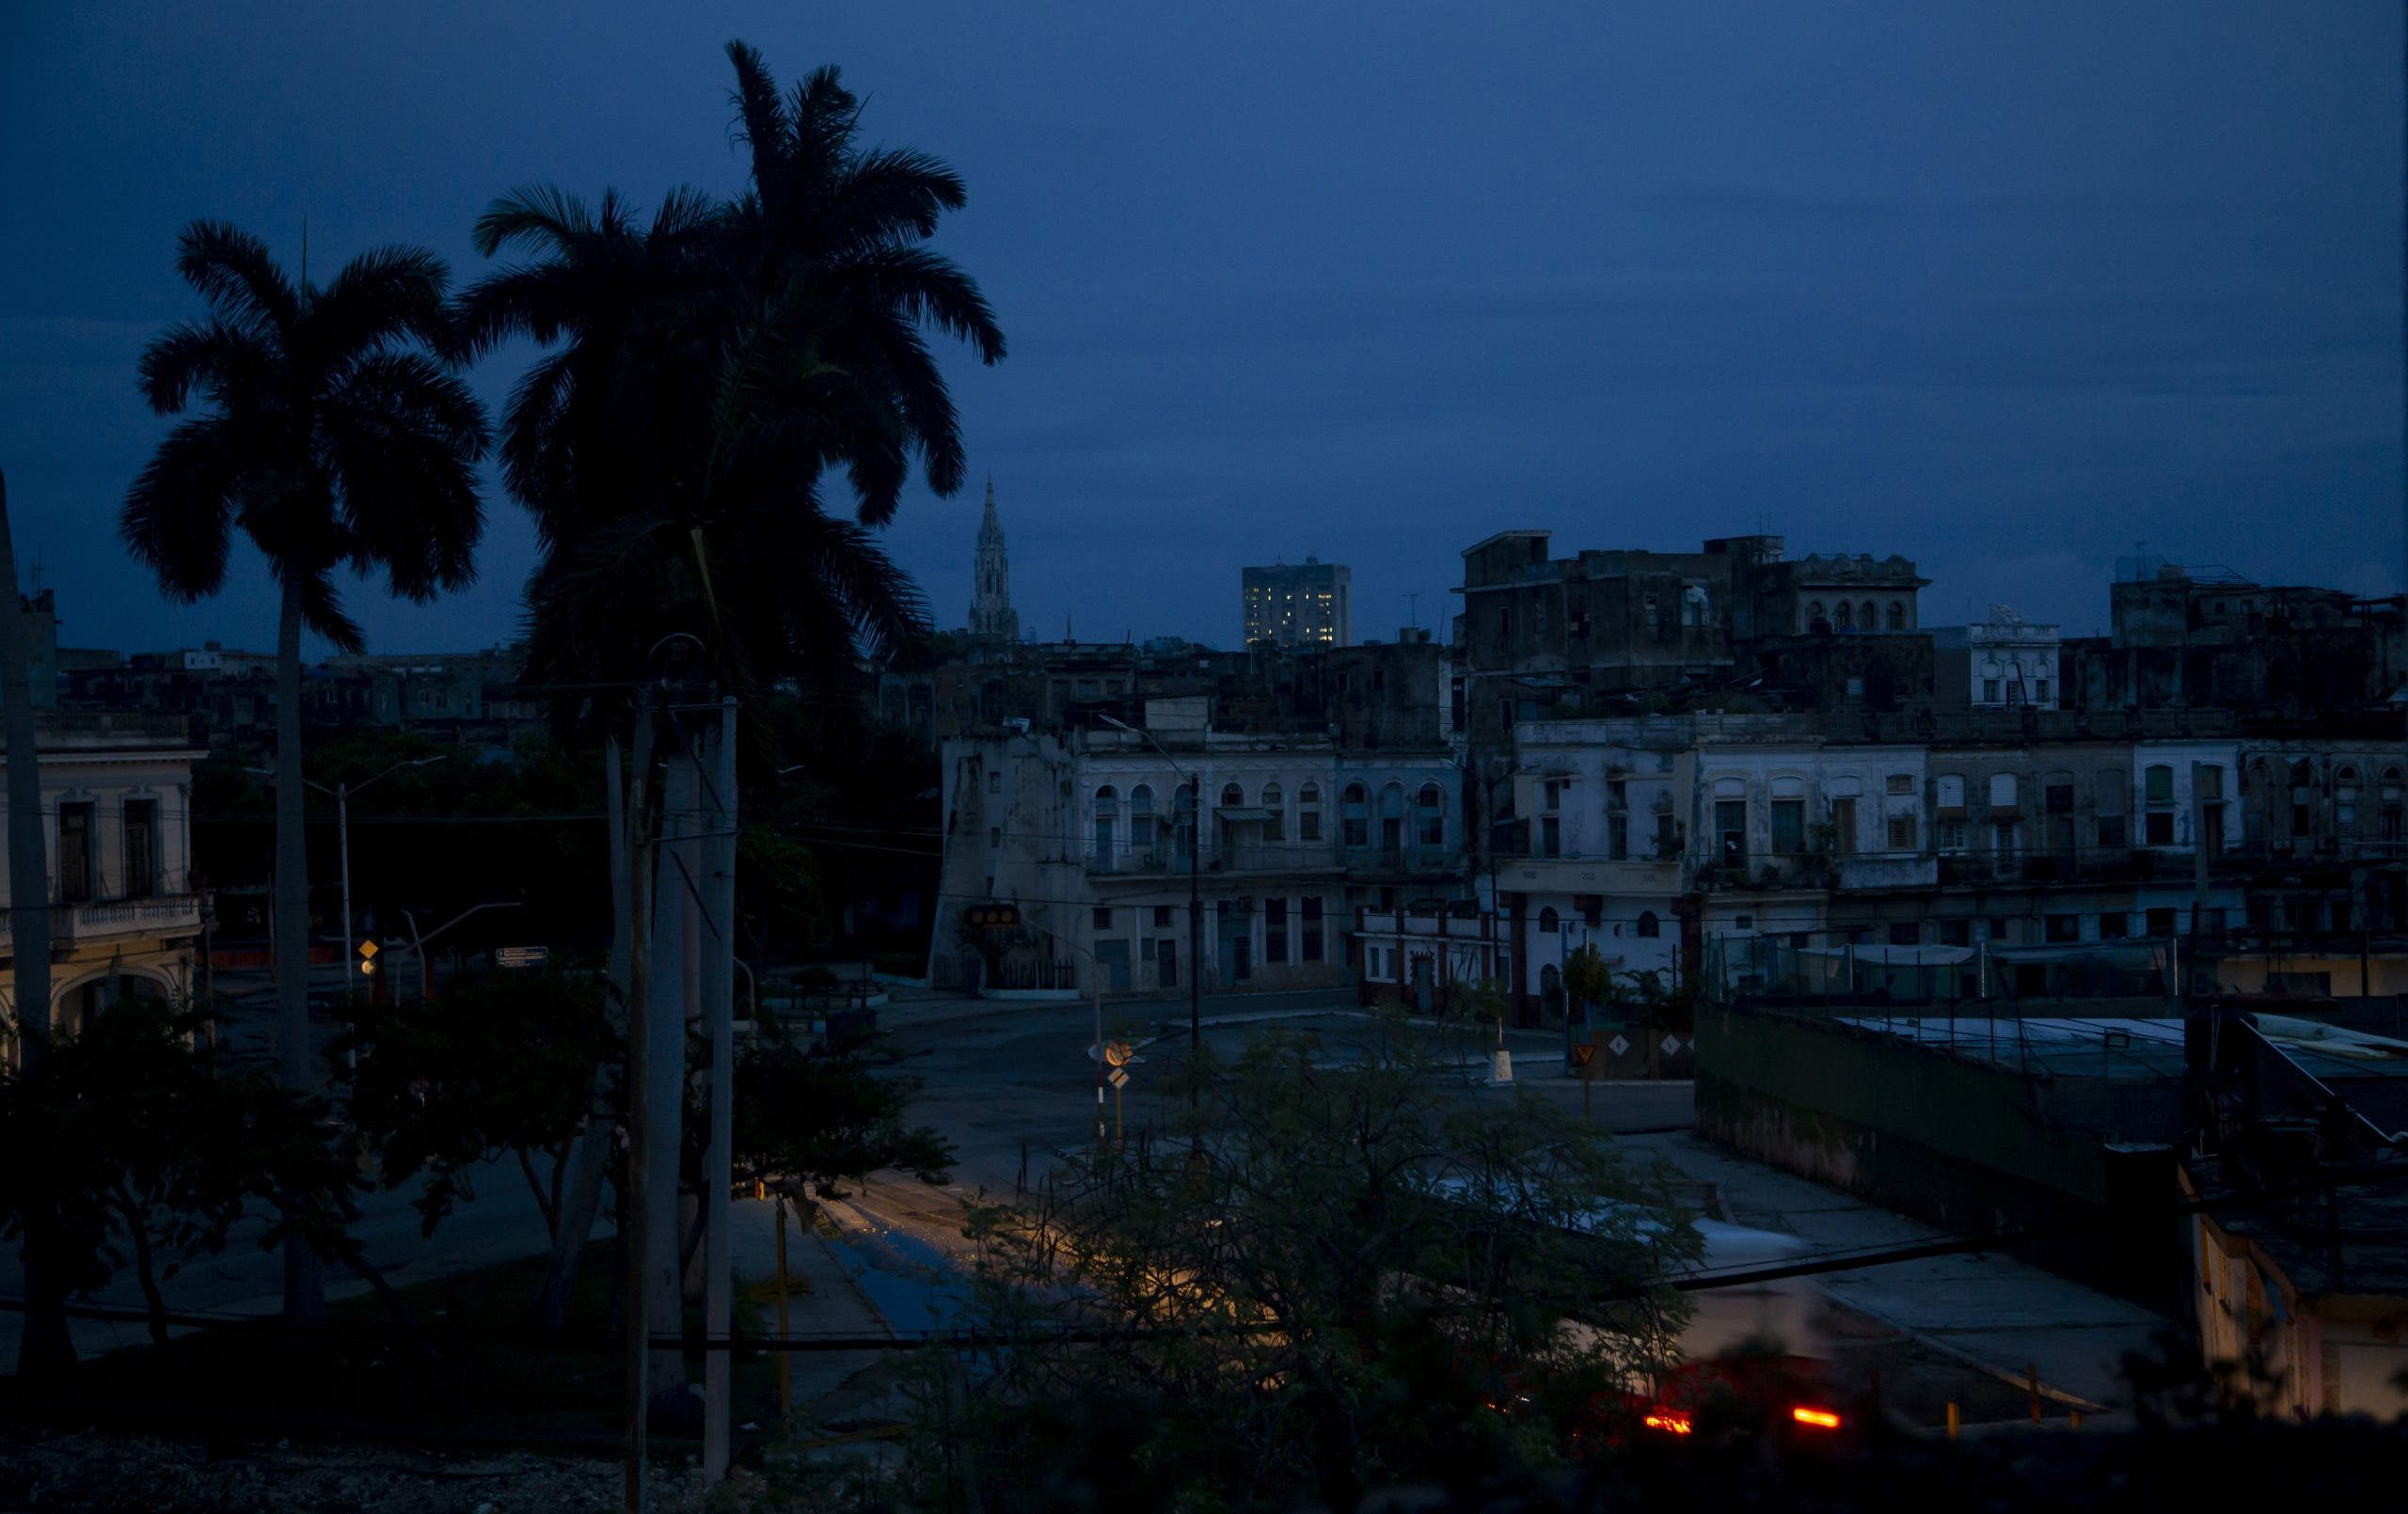 Apagón de más 48 horas pone en jaque a las familias cubanas